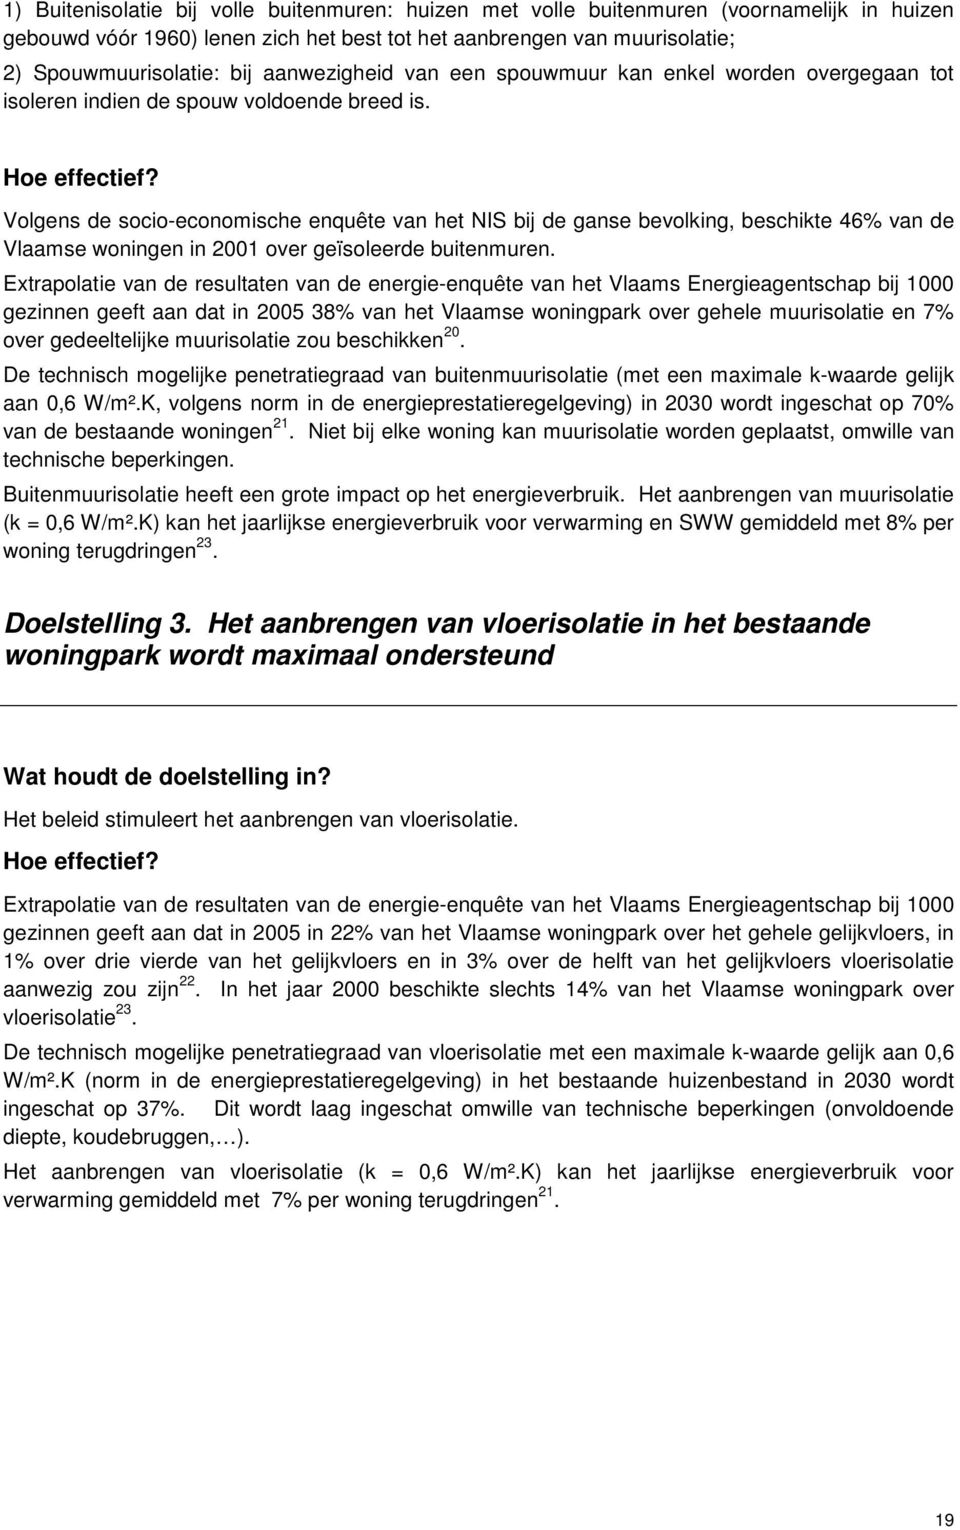 Volgens de socio-economische enquête van het NIS bij de ganse bevolking, beschikte 46% van de Vlaamse woningen in 2001 over geïsoleerde buitenmuren.